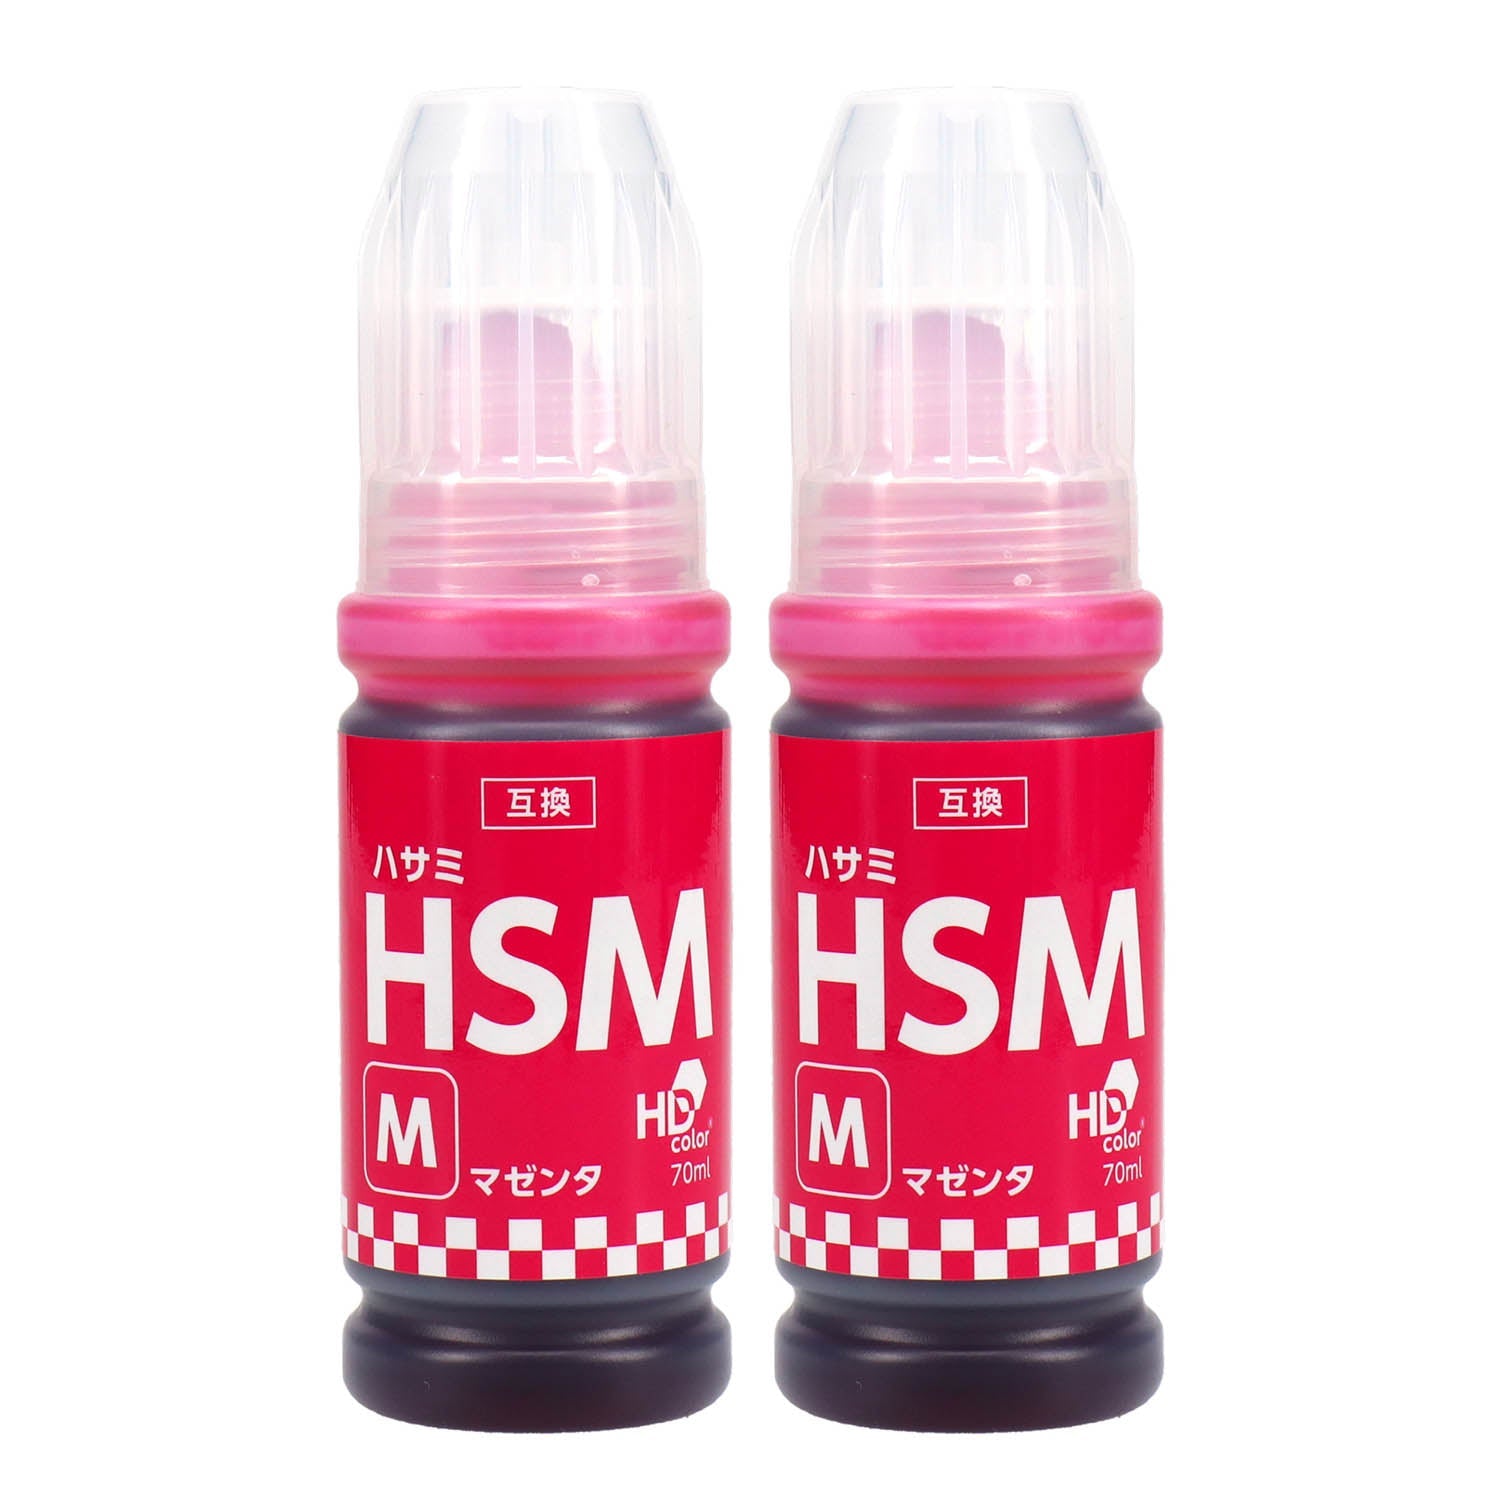 エプソン用 HSM-M (ハサミ) 互換インクボトル マゼンタ